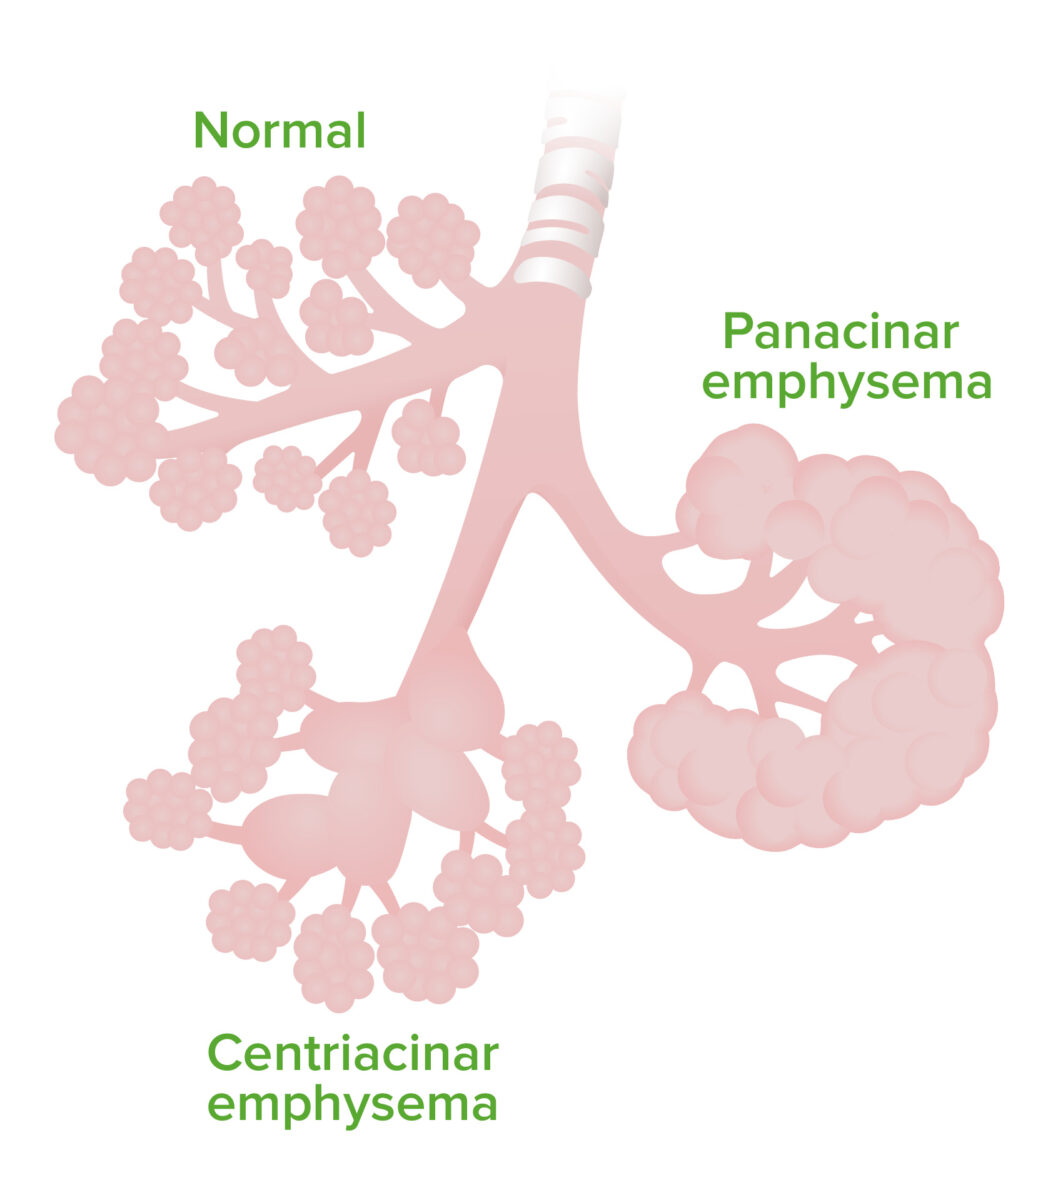 Emphysema pathophysiology